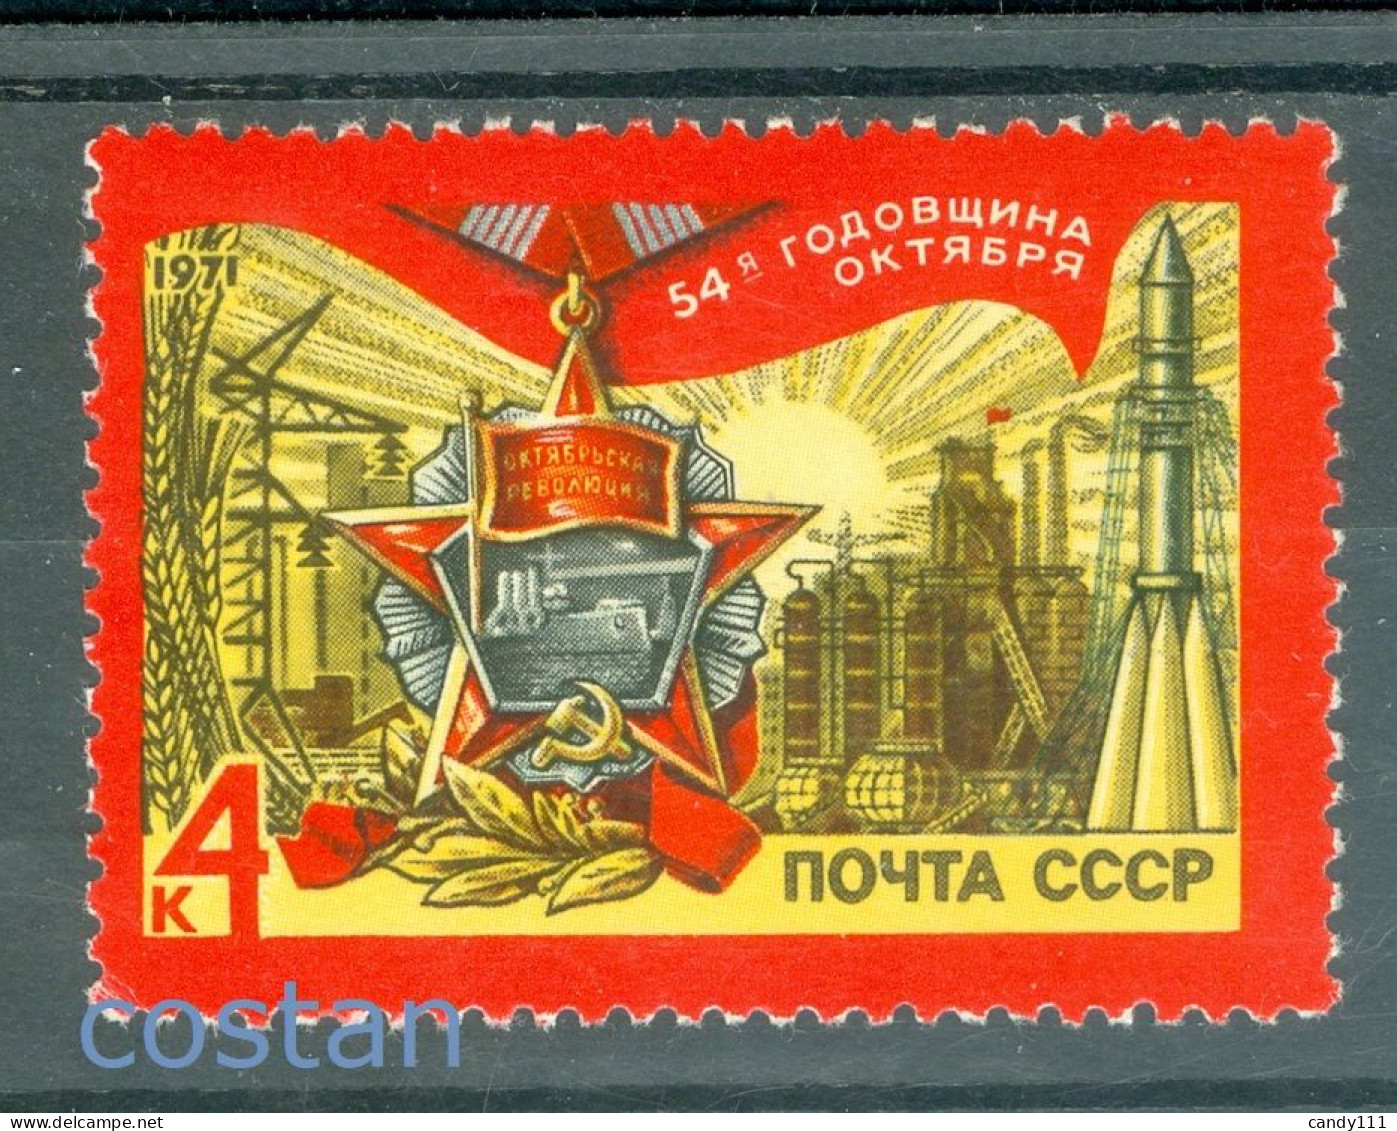 1971 October Revolution,Medal/Potemkin,Industry,Rocket,Power,Russia,3838,MNH - Nuovi